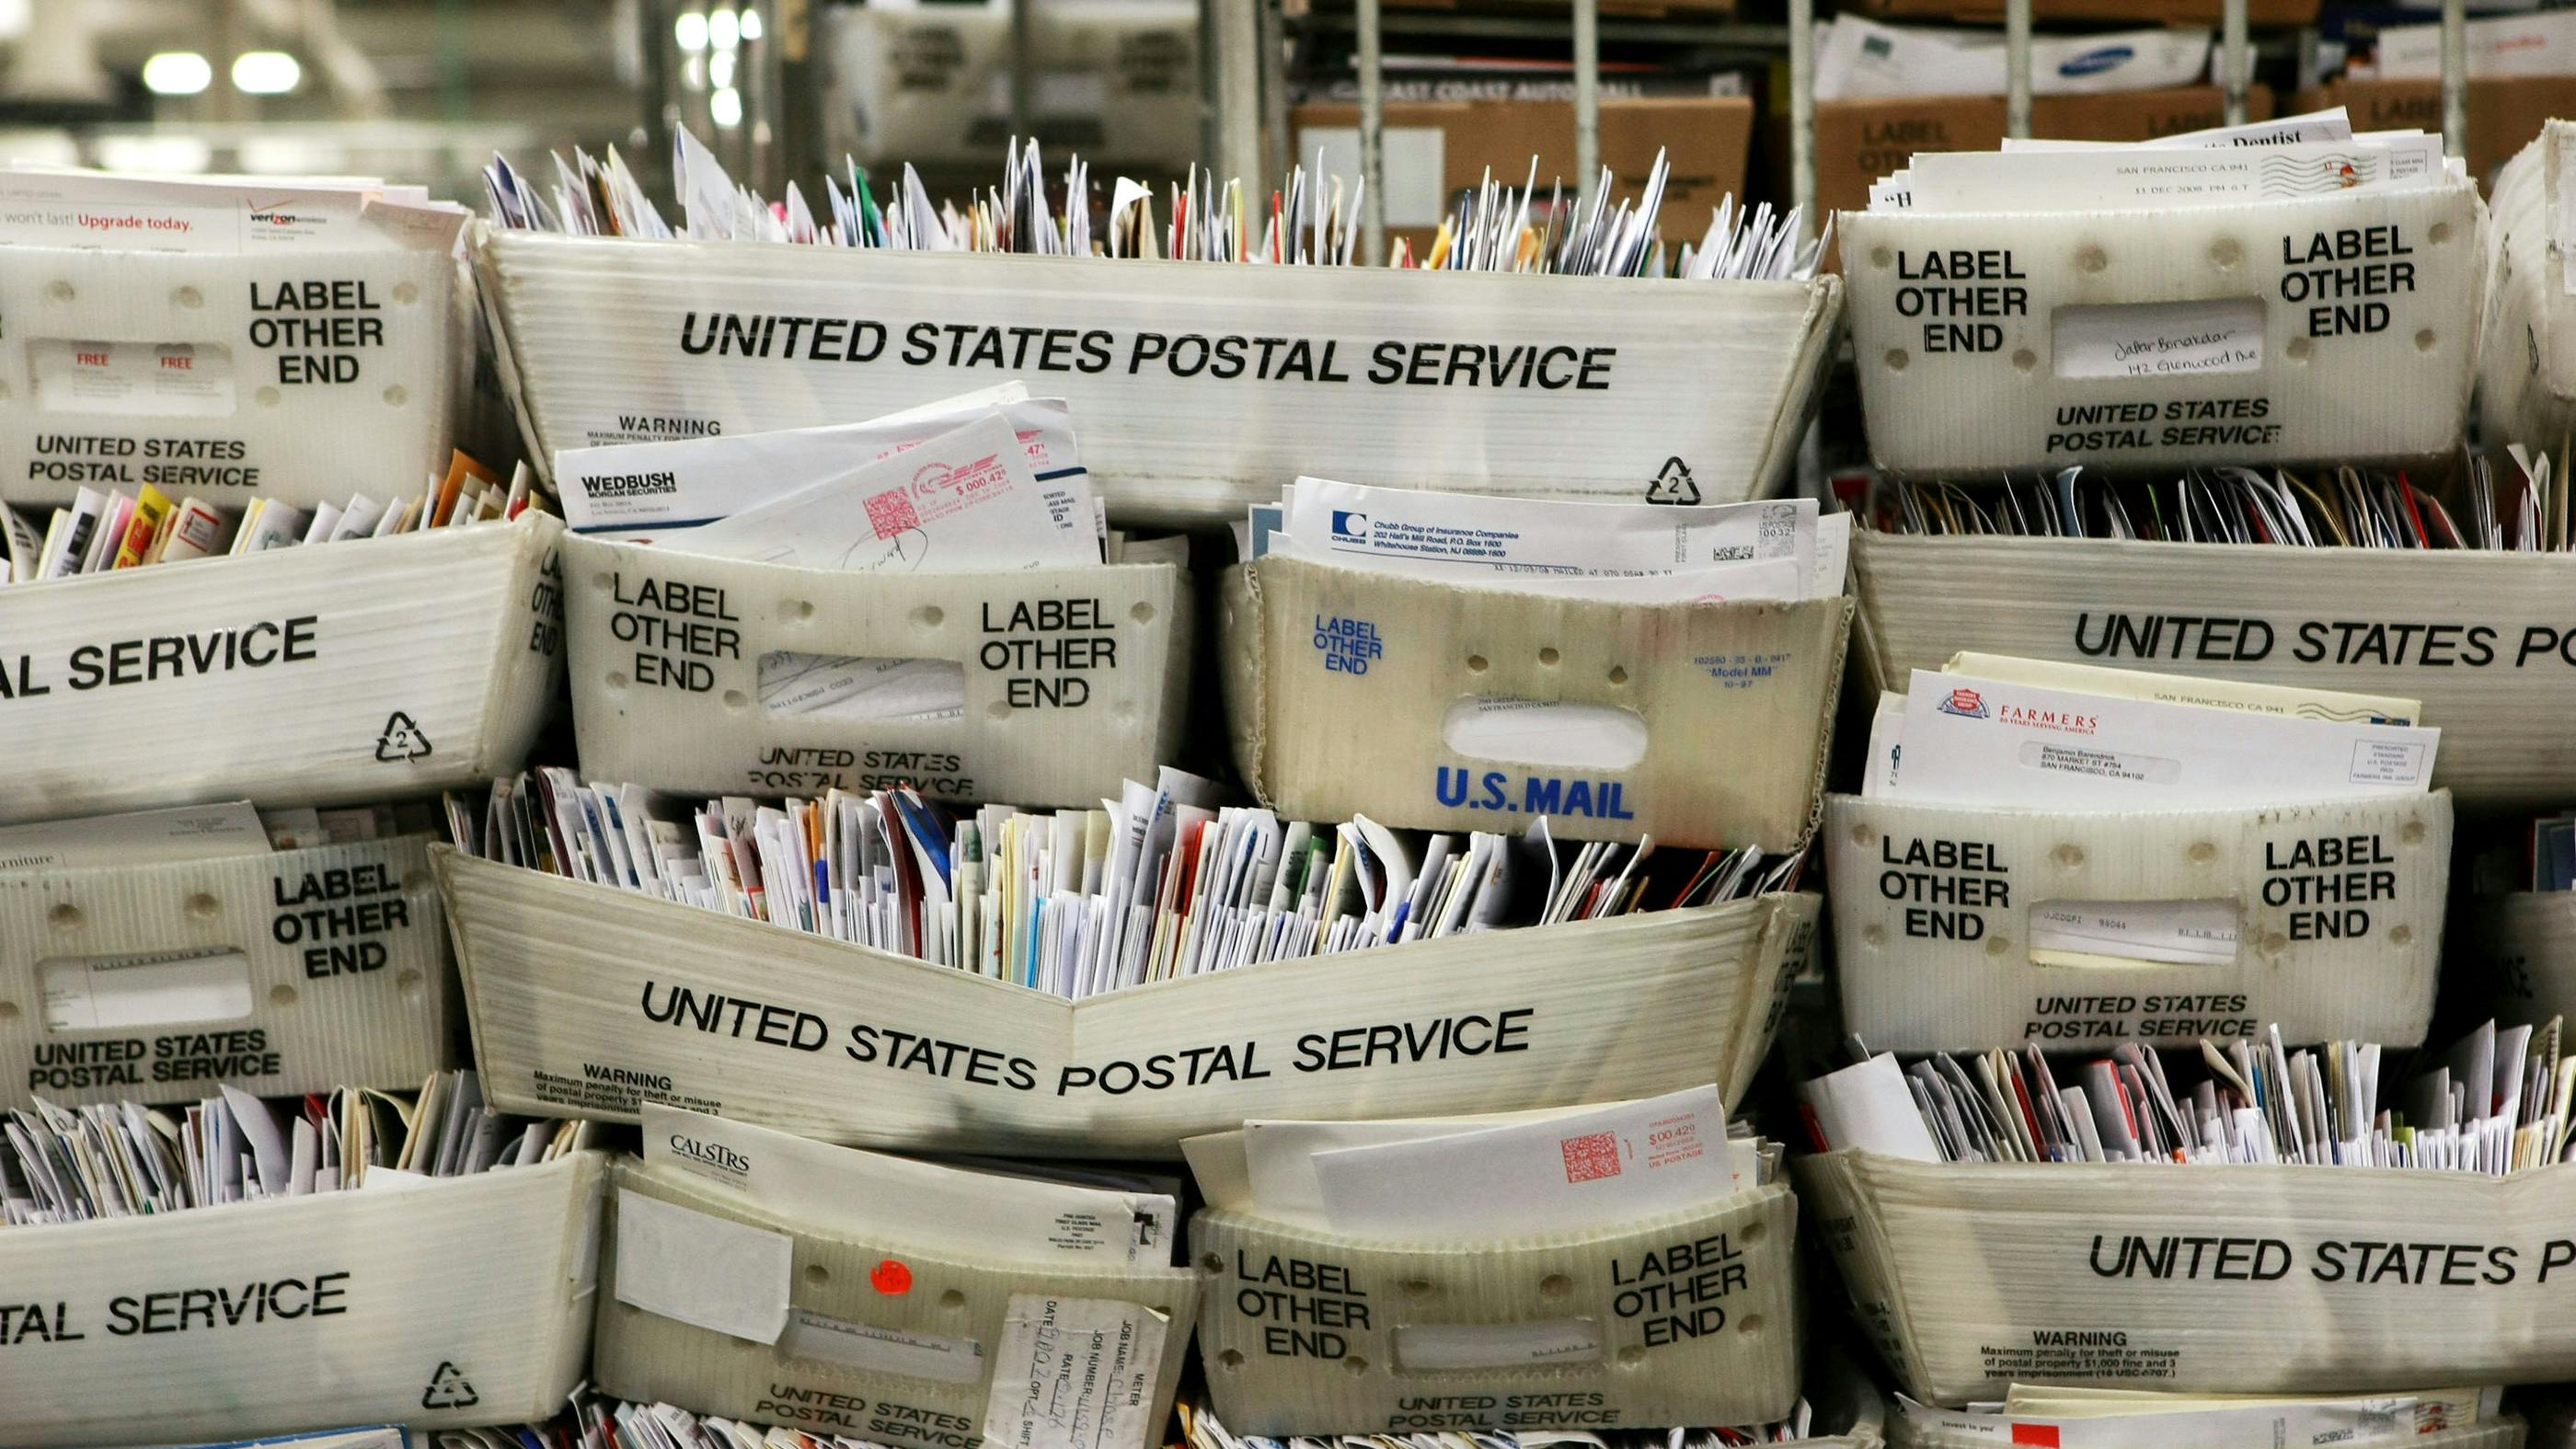 Wir sehen einige Kisten voll mit Briefen – auf den Kisten steht: UNITED STATES POSTAL SERVICE 